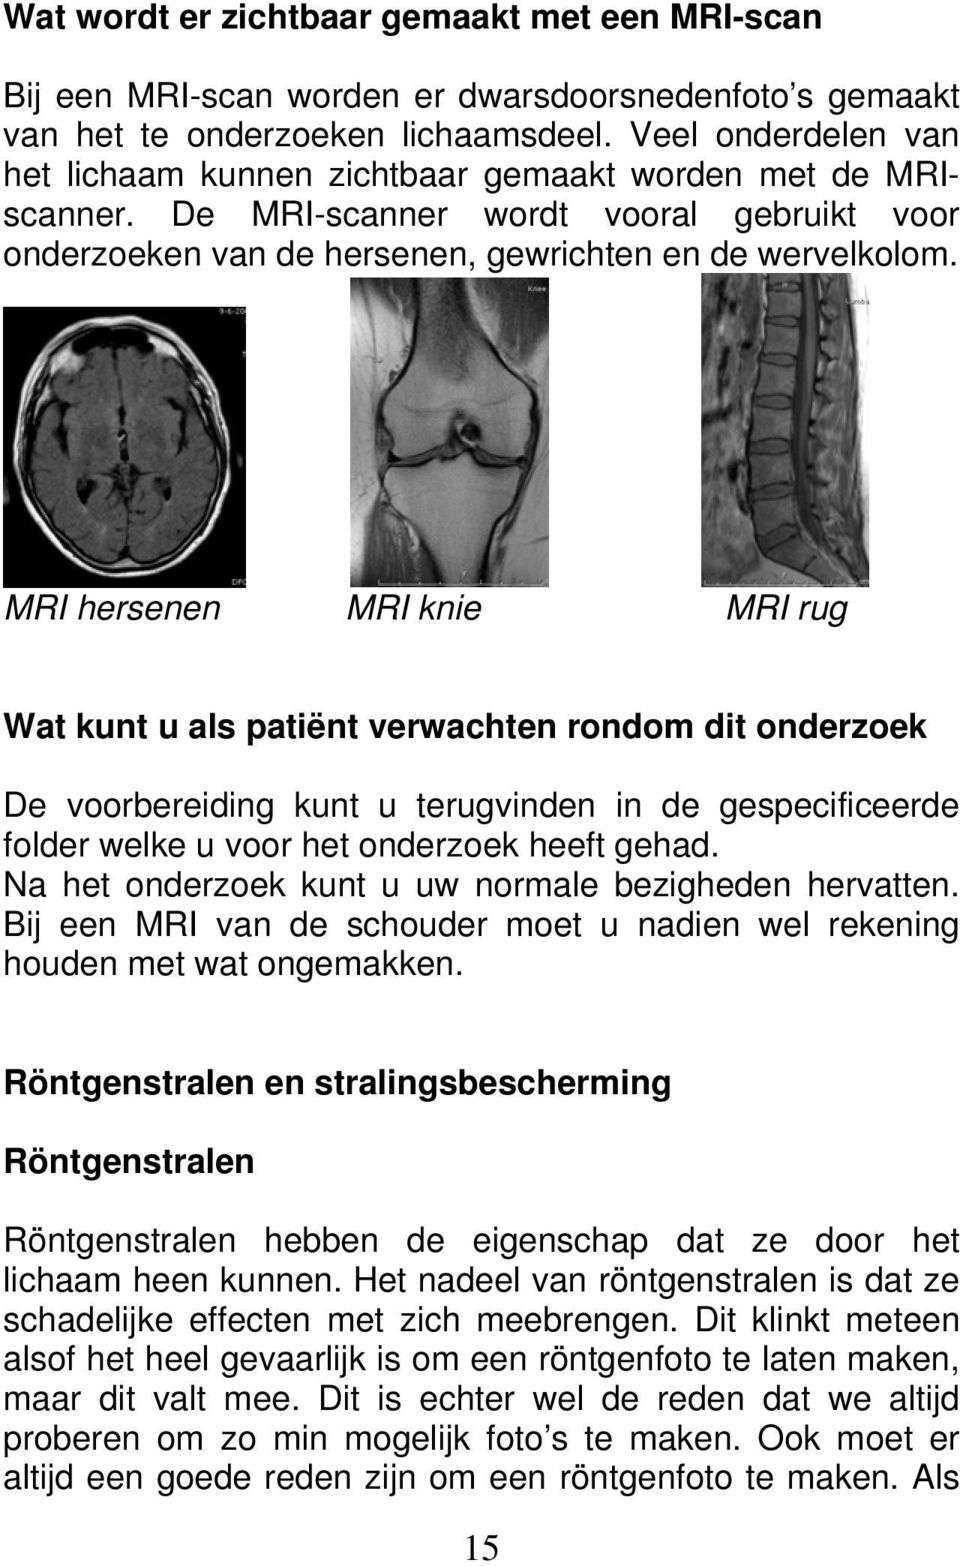 MRI hersenen MRI knie MRI rug Wat kunt u als patiënt verwachten rondom dit onderzoek De voorbereiding kunt u terugvinden in de gespecificeerde folder welke u voor het onderzoek heeft gehad.